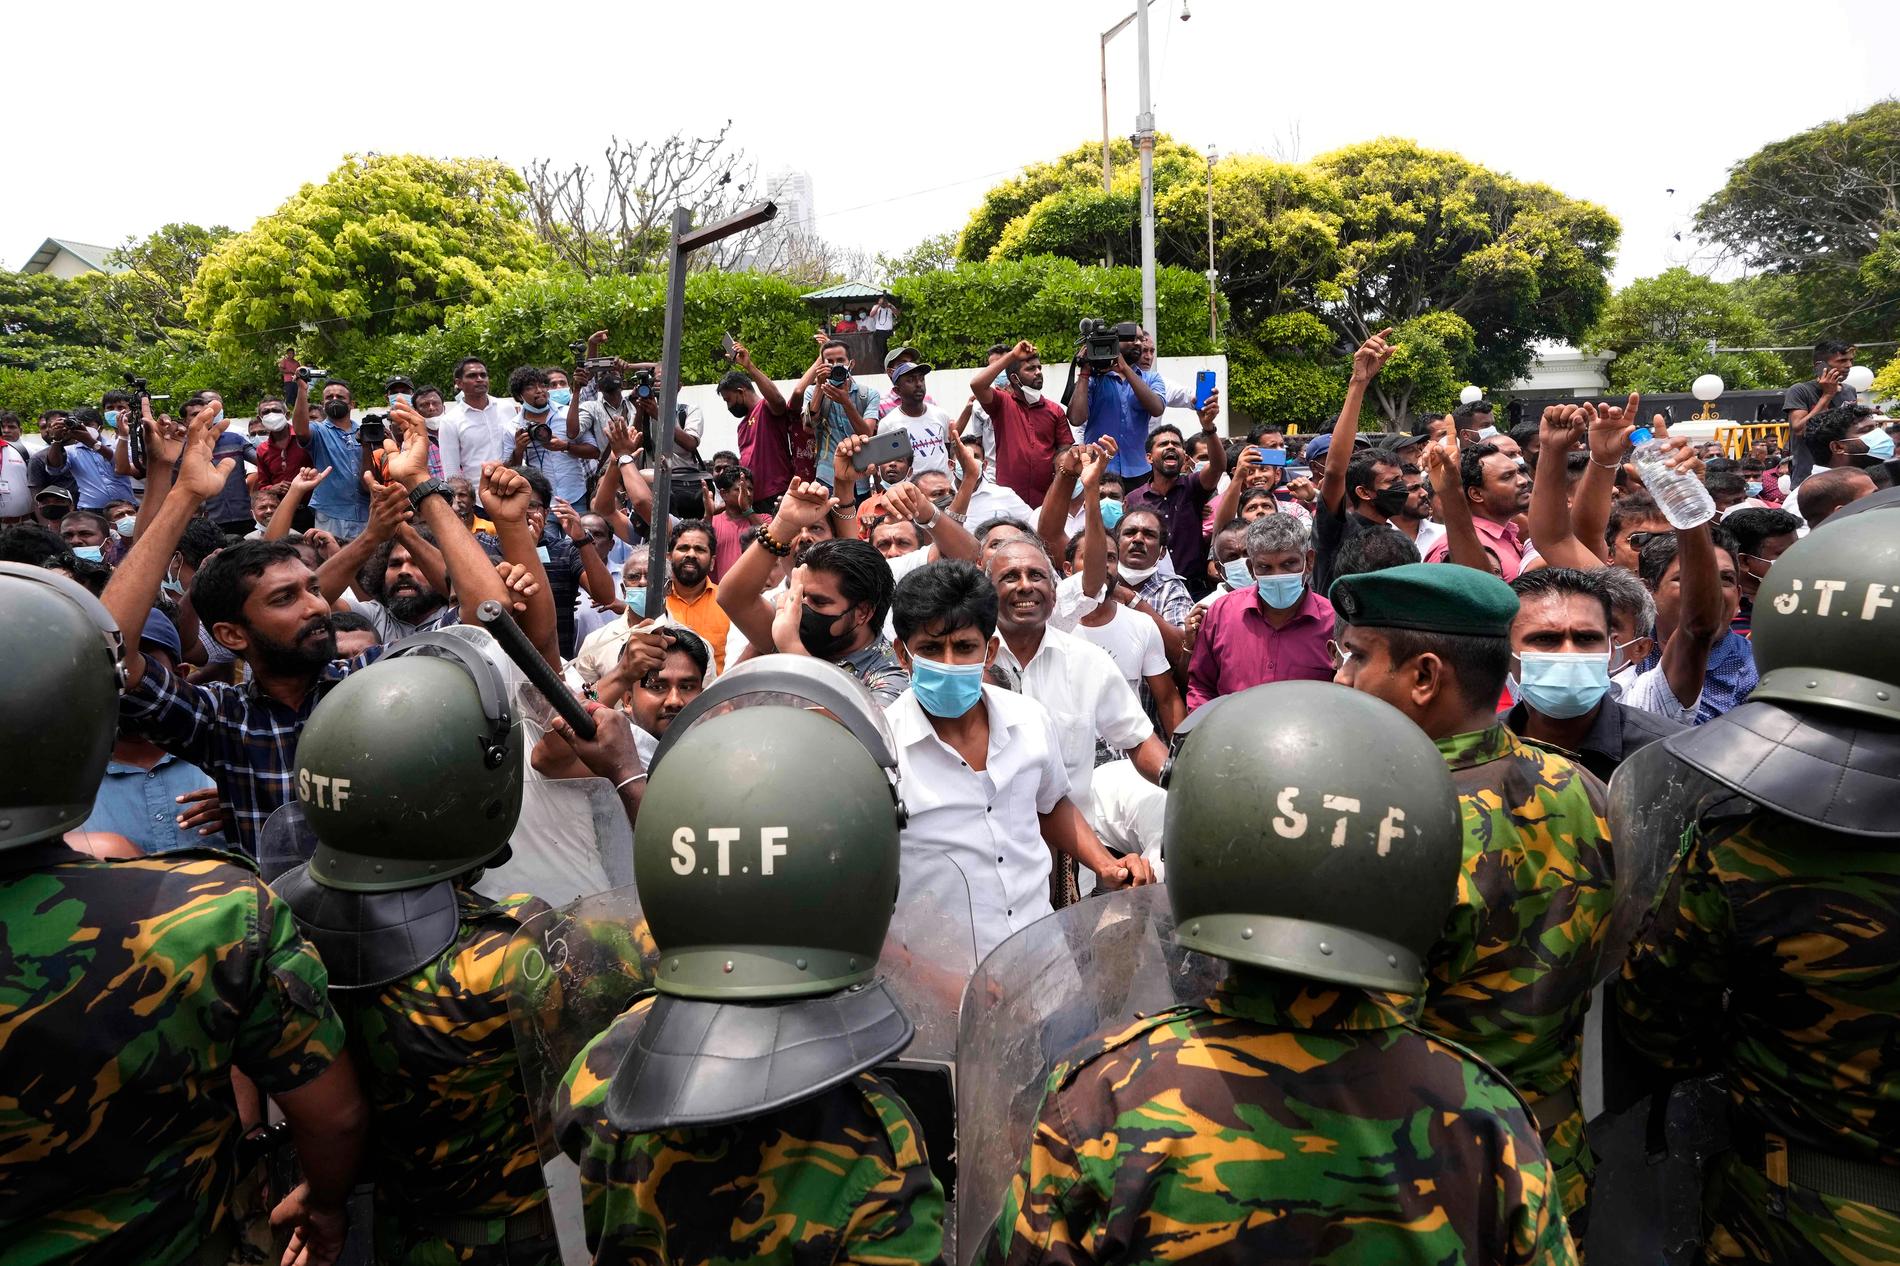 Lankesiska regeringsanhängare i Colombo hurrar efter att ha vandaliserat en av de regeringskritiska demonstranternas samlingsplatser.